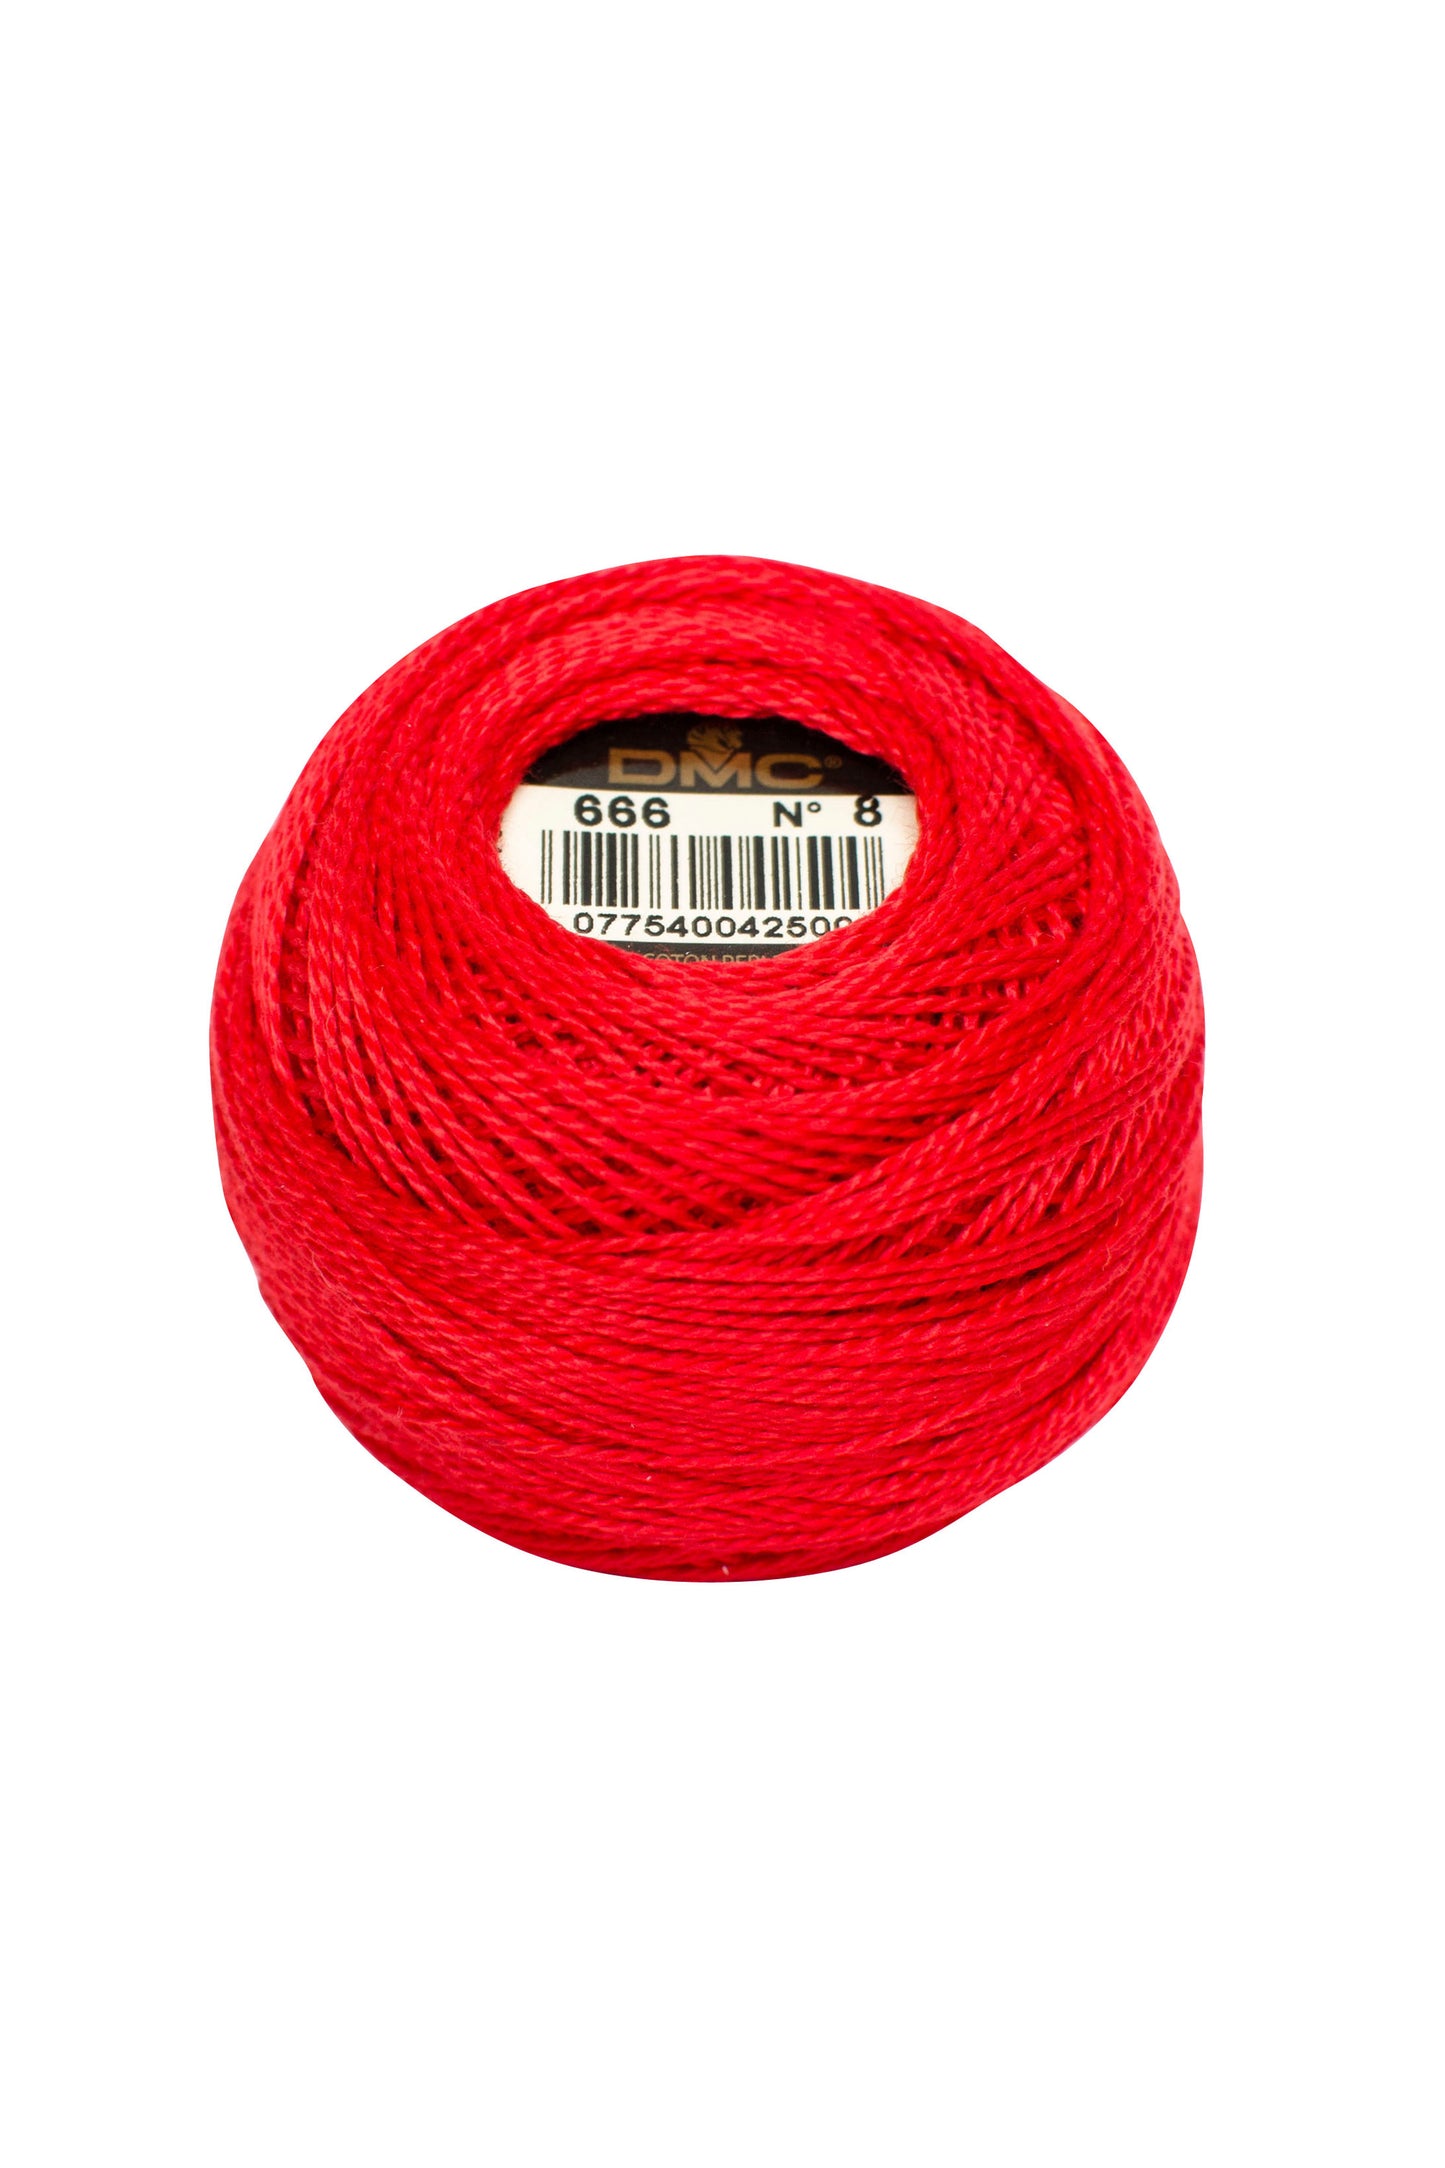 666 Bright Red – DMC #12 Perle Cotton